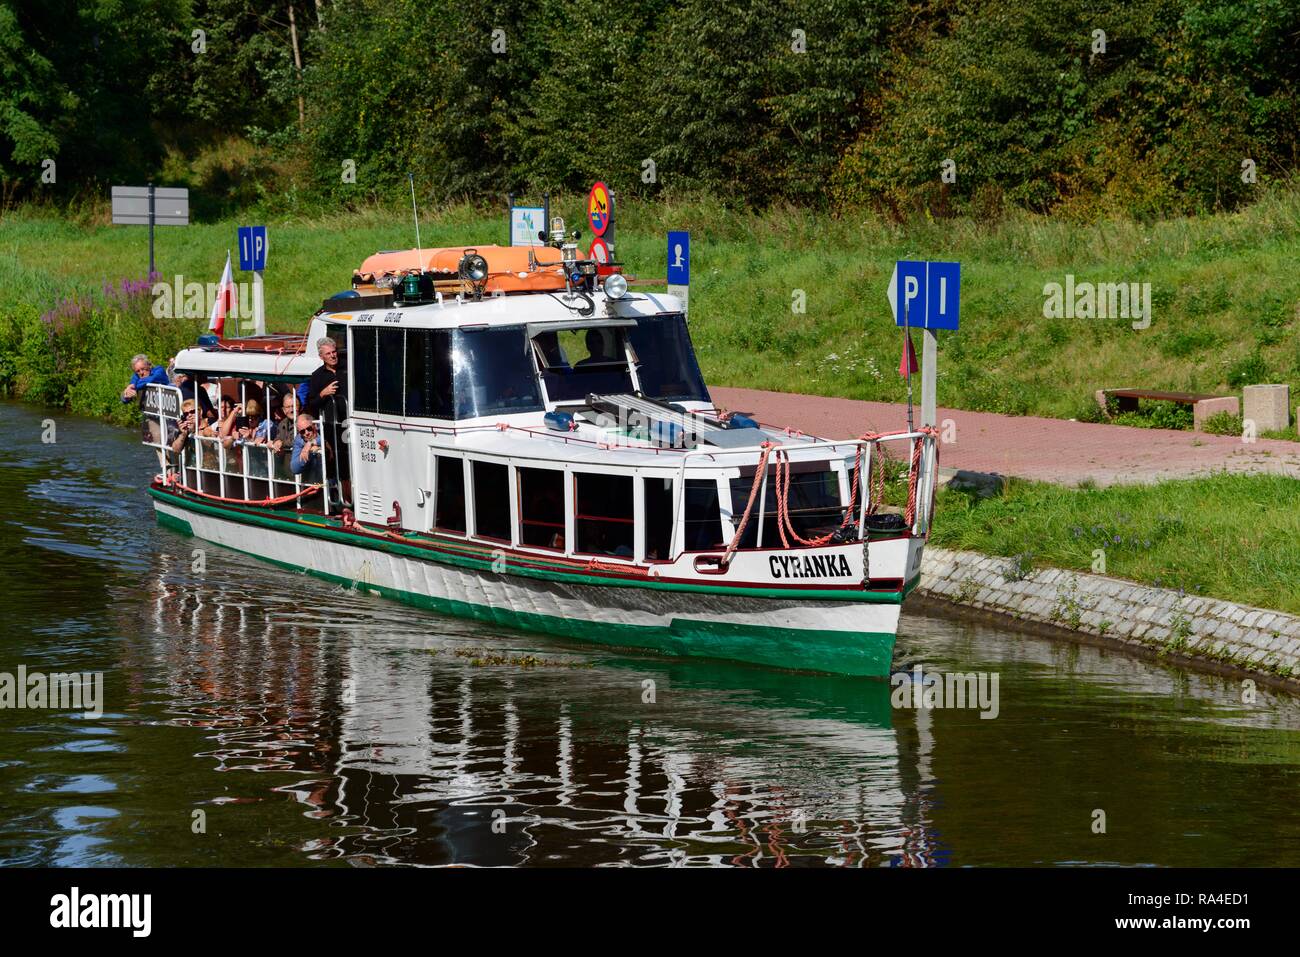 Passenger ship Cyranka, Oberlandkanal, Warmia-Masuria, Poland Stock Photo